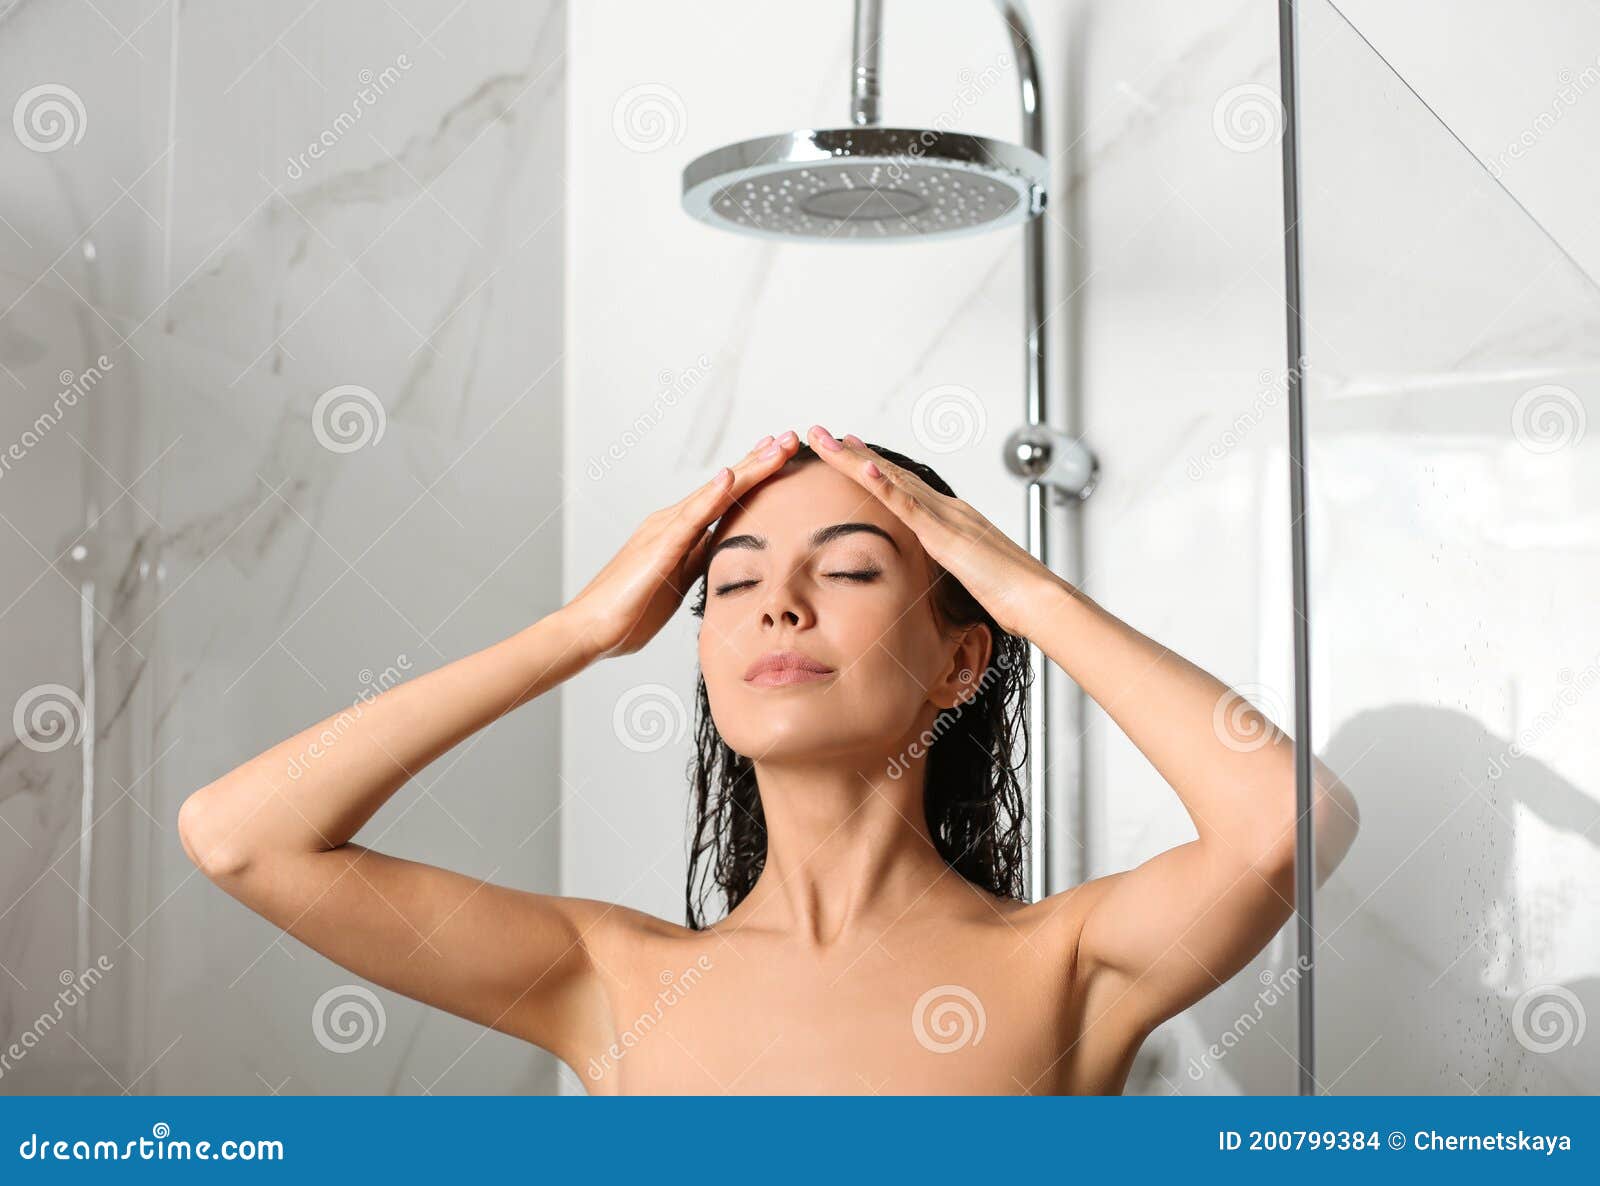 性感清纯美女浴室湿身诱惑高清私房写真图片(2)_配图网